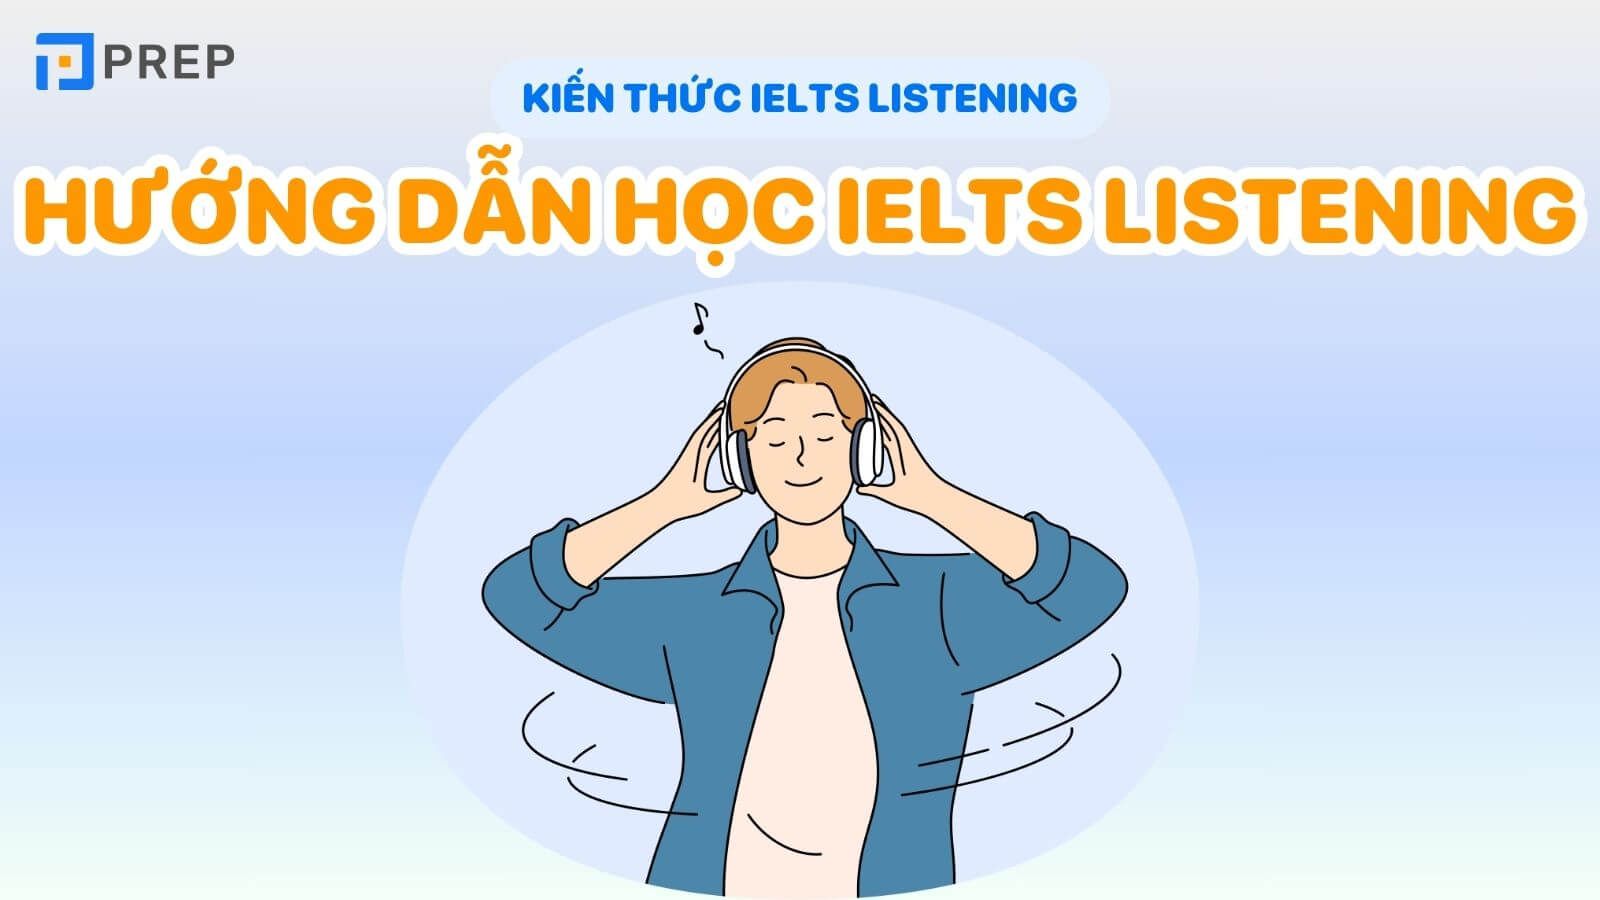 Hướng dẫn học IELTS Listening hiệu quả